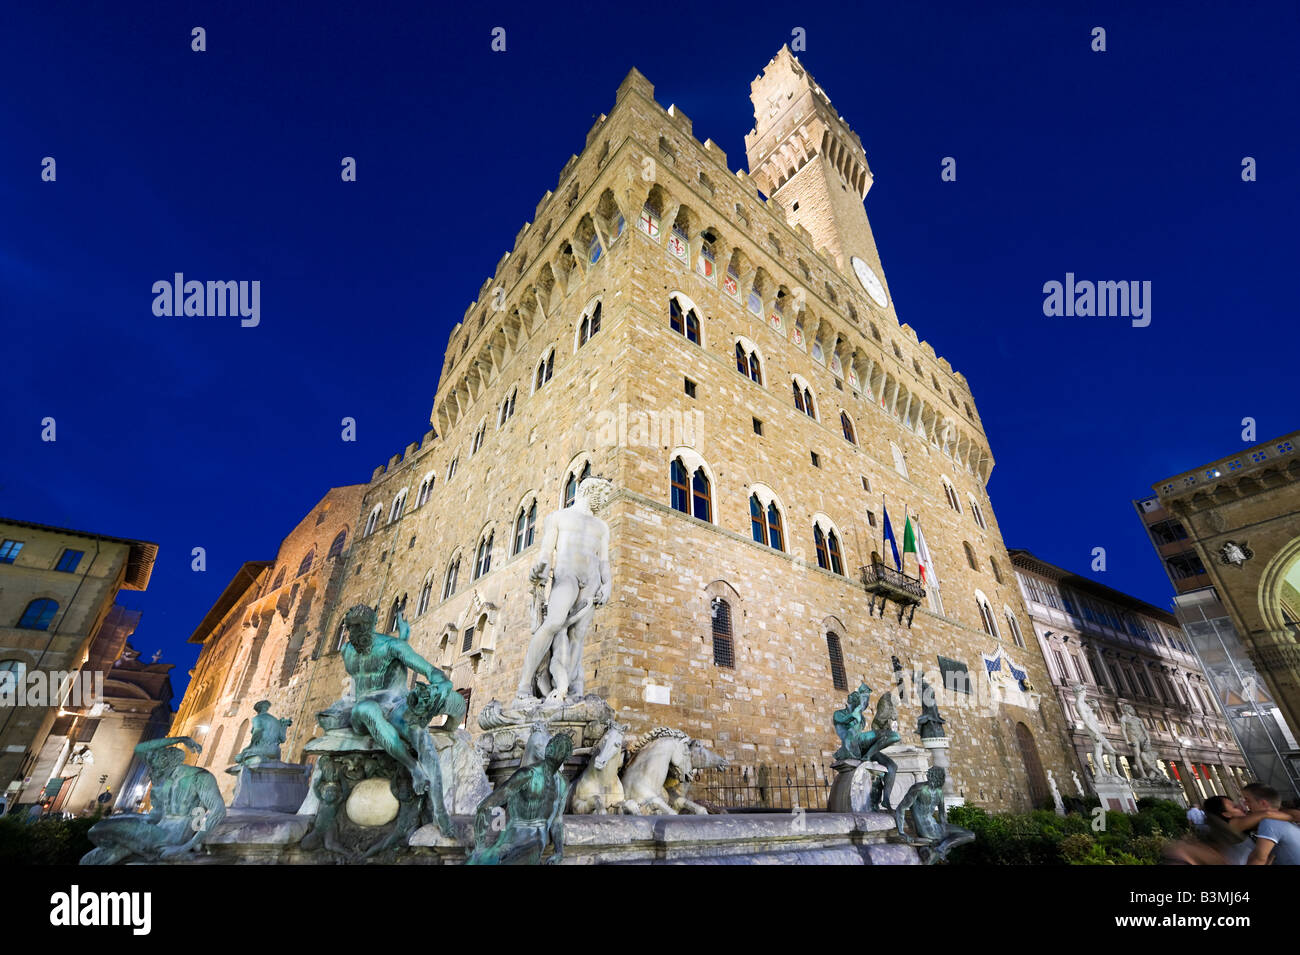 Palazzo Vecchio and Neptune Fountain at night, Piazza della Signoria, Florence, Tuscany, Italy Stock Photo